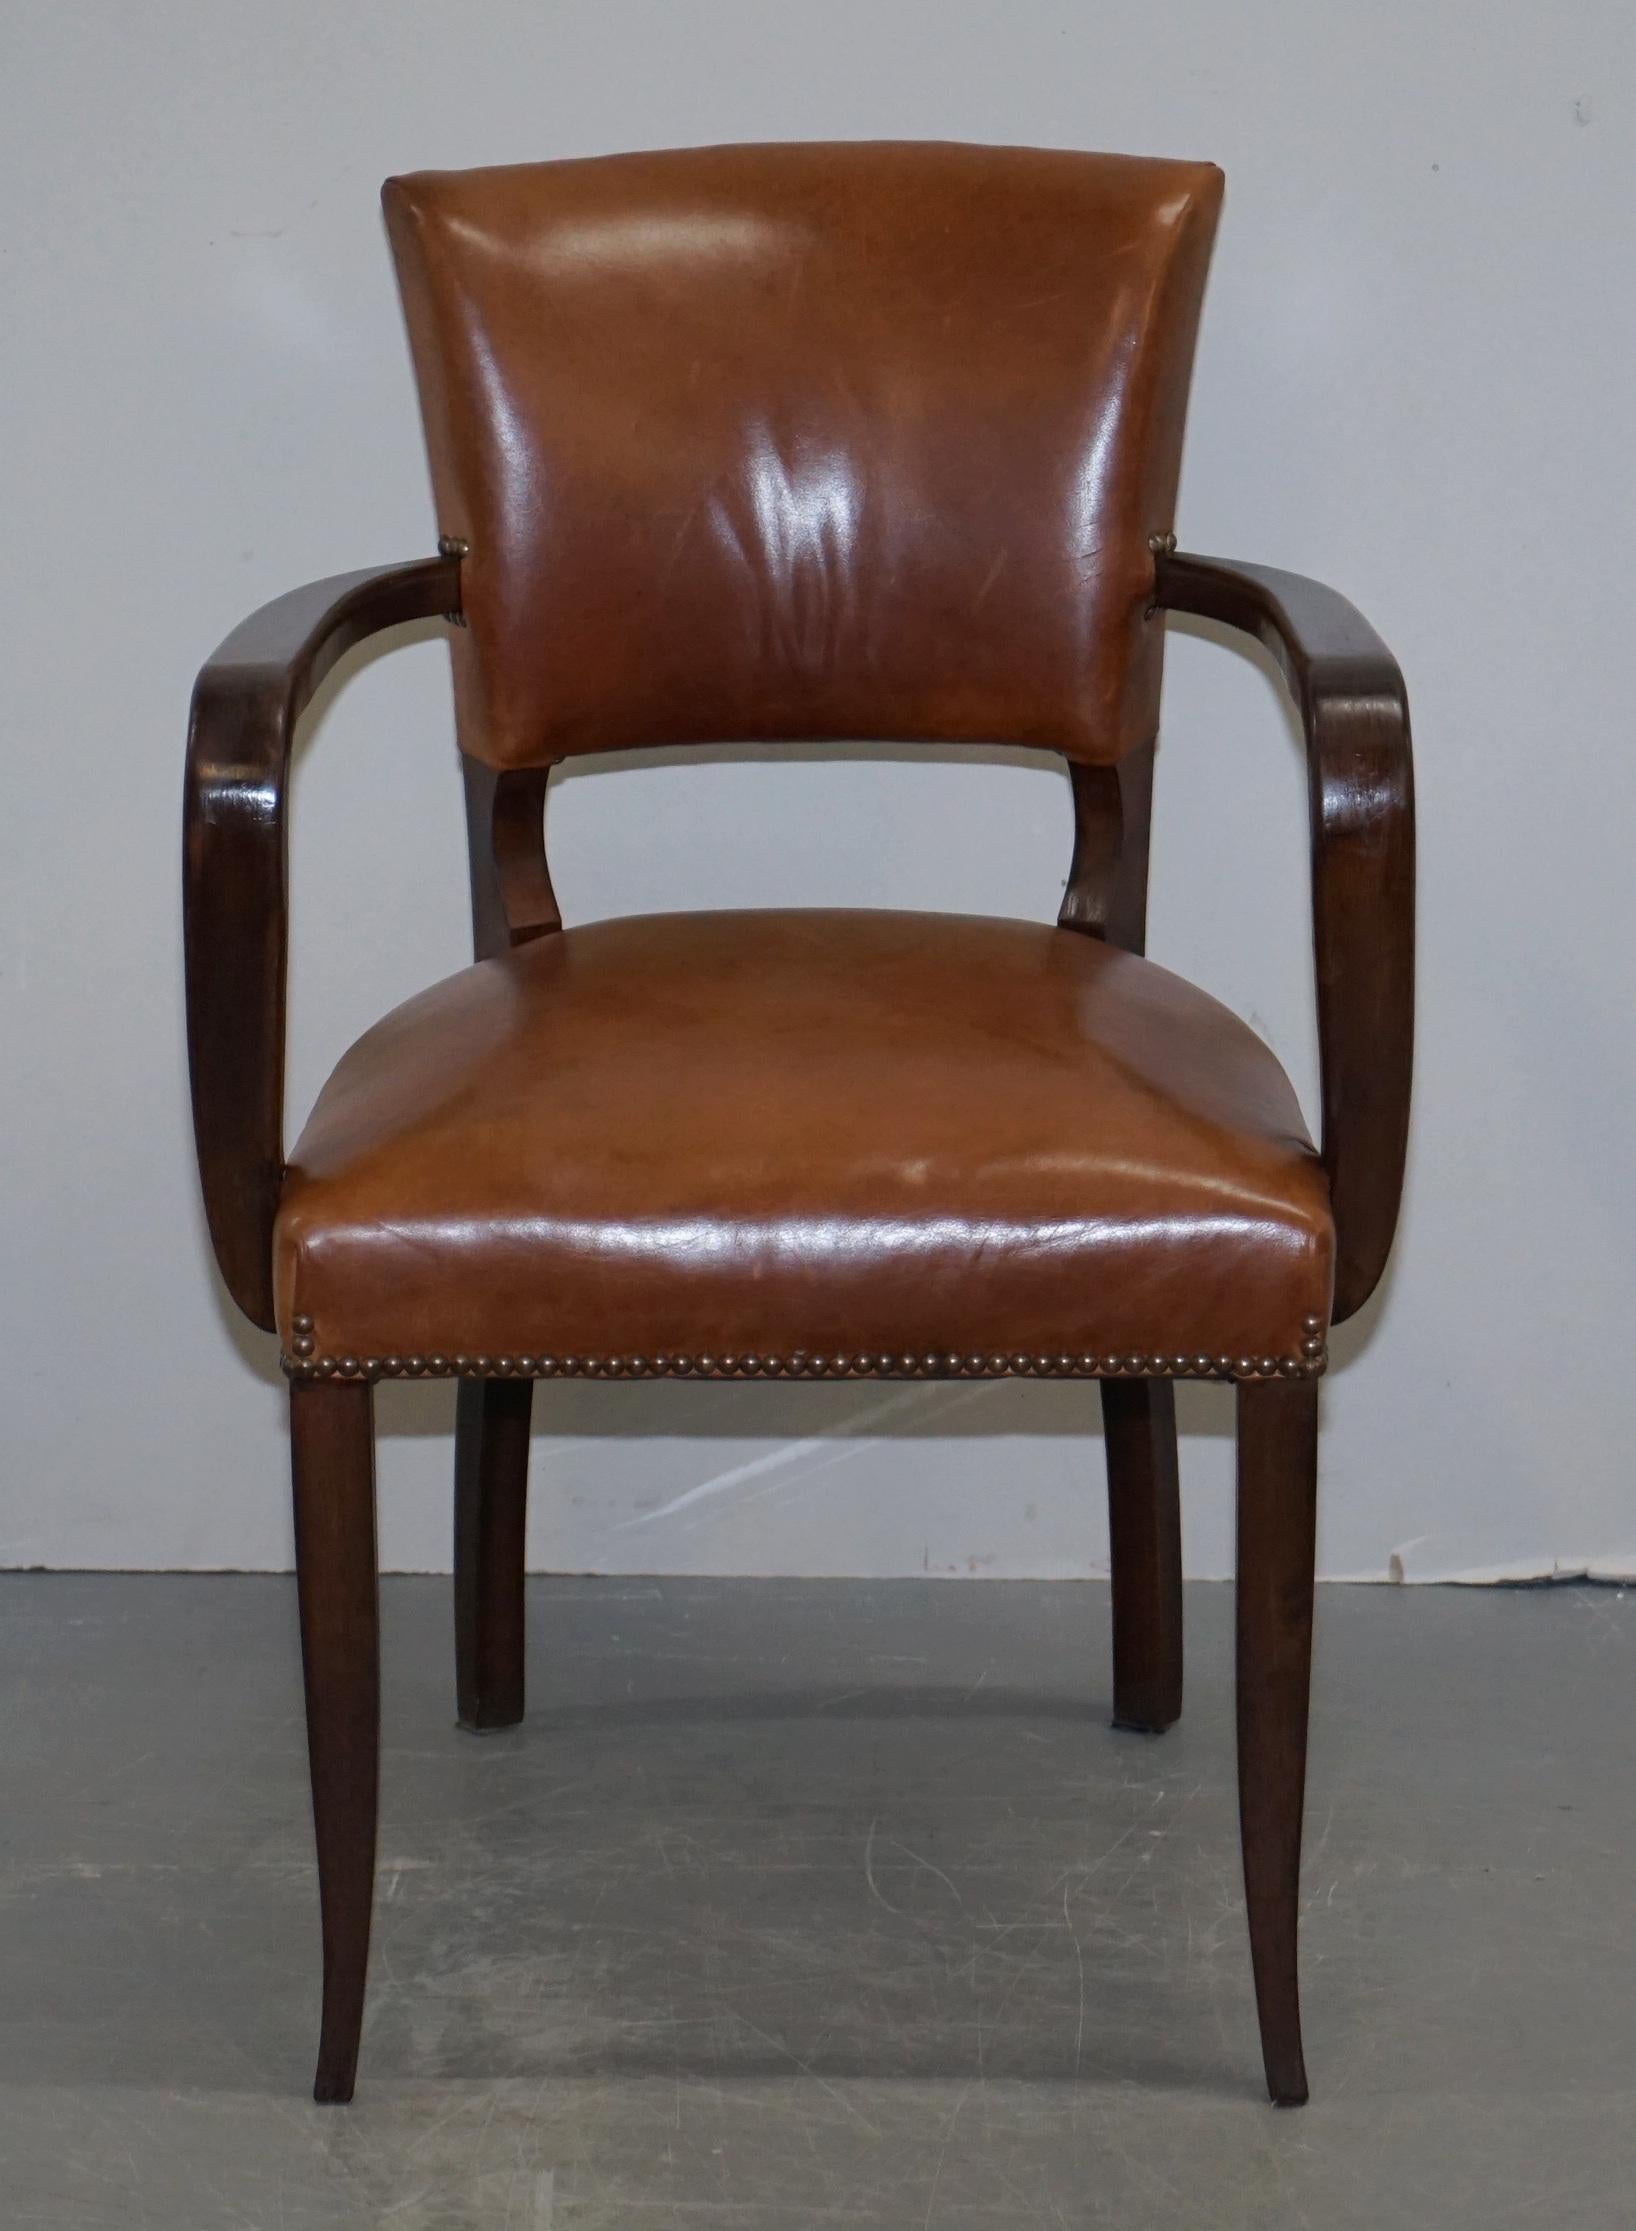 Nous sommes ravis de vous proposer ce magnifique fauteuil de bureau Bridge en cuir brun George Smith, fabriqué à la main en Angleterre

Un fauteuil de belle apparence, bien fait et très décoratif, idéal pour être utilisé comme bureau ou chaise de